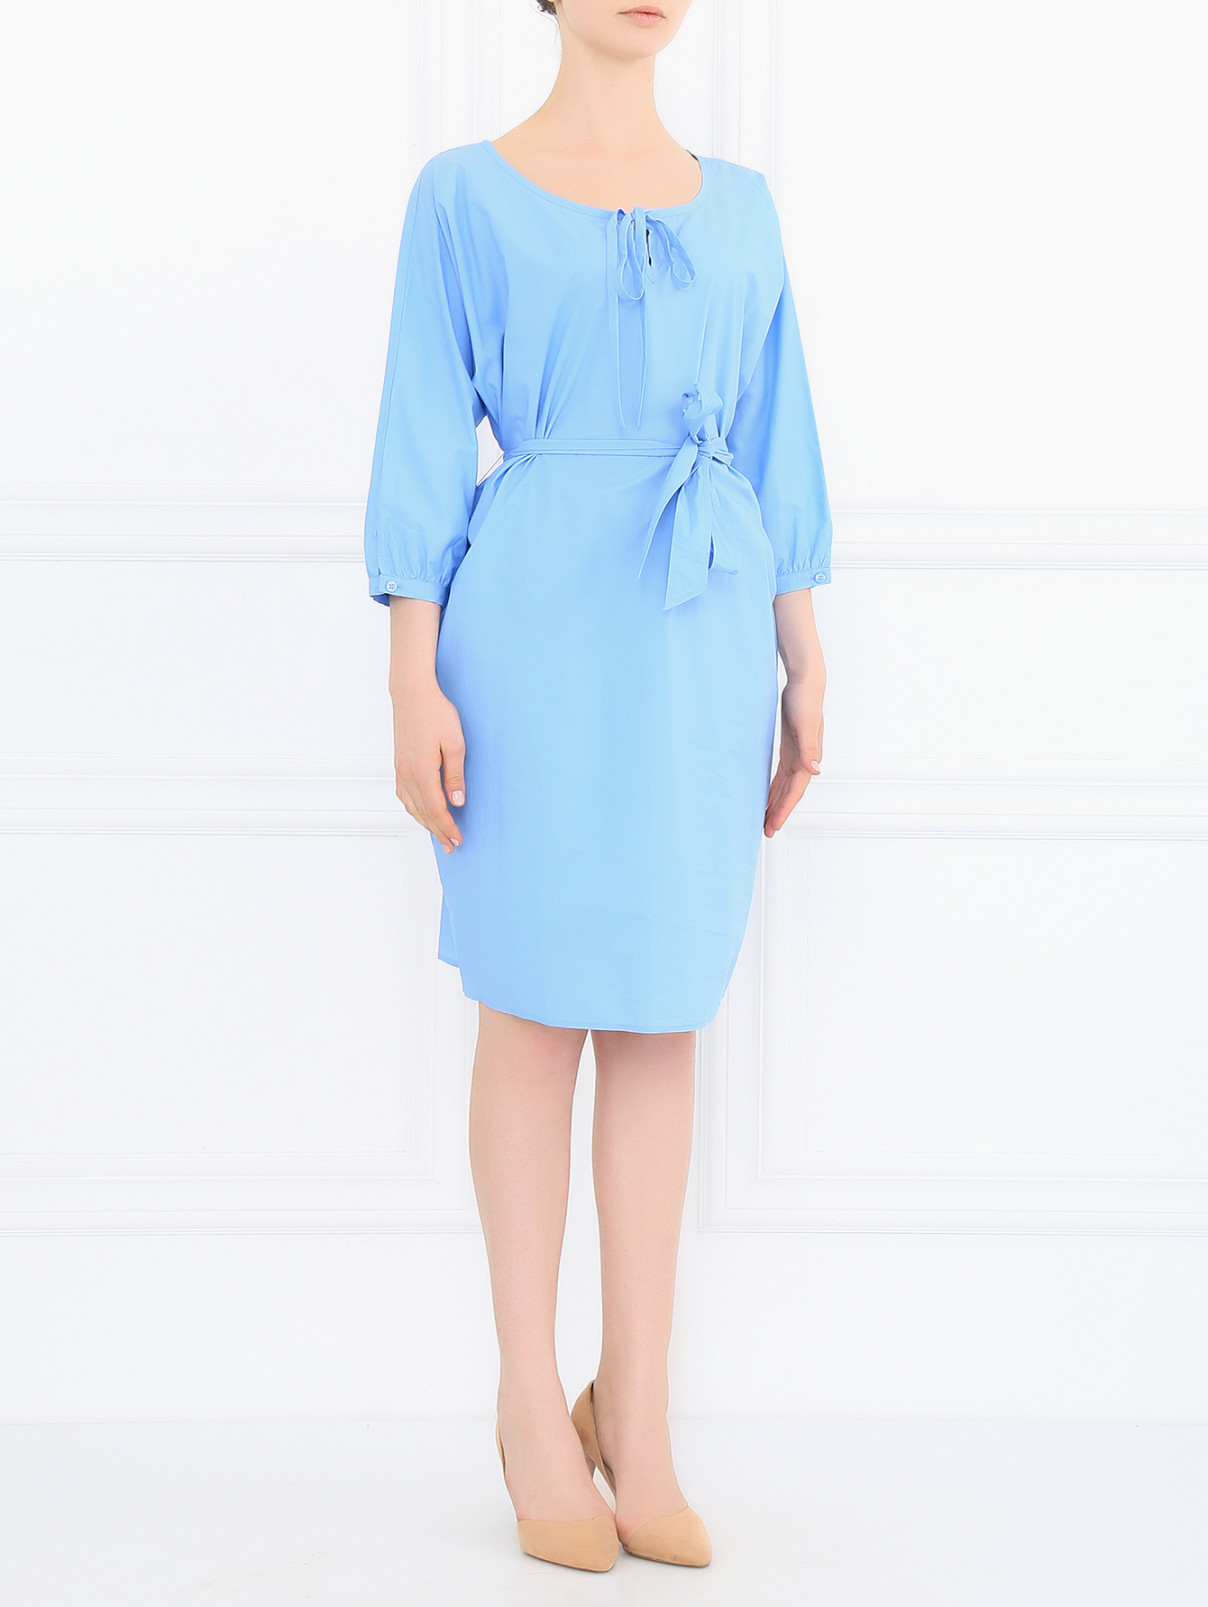 Платье из хлопка с рукавами 3/4 Moschino Cheap&Chic  –  Модель Общий вид  – Цвет:  Синий